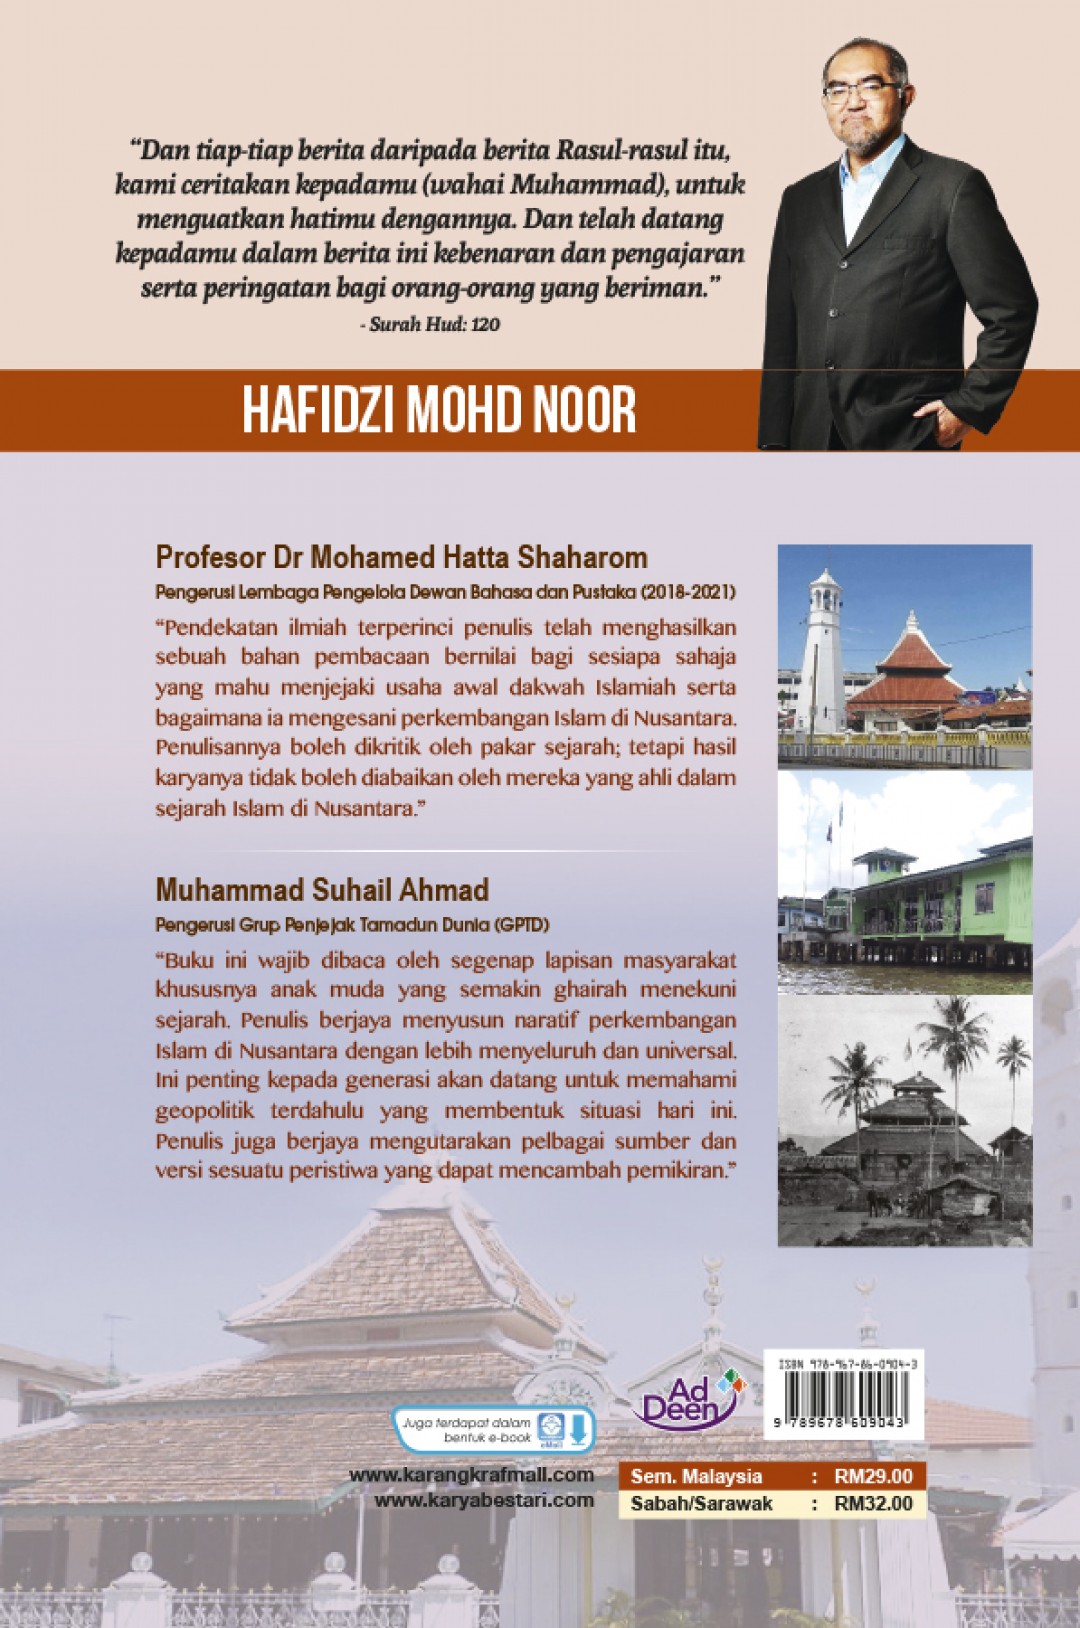 Fajar Islam Di Nusantara - Hafidzi Mohd Noor